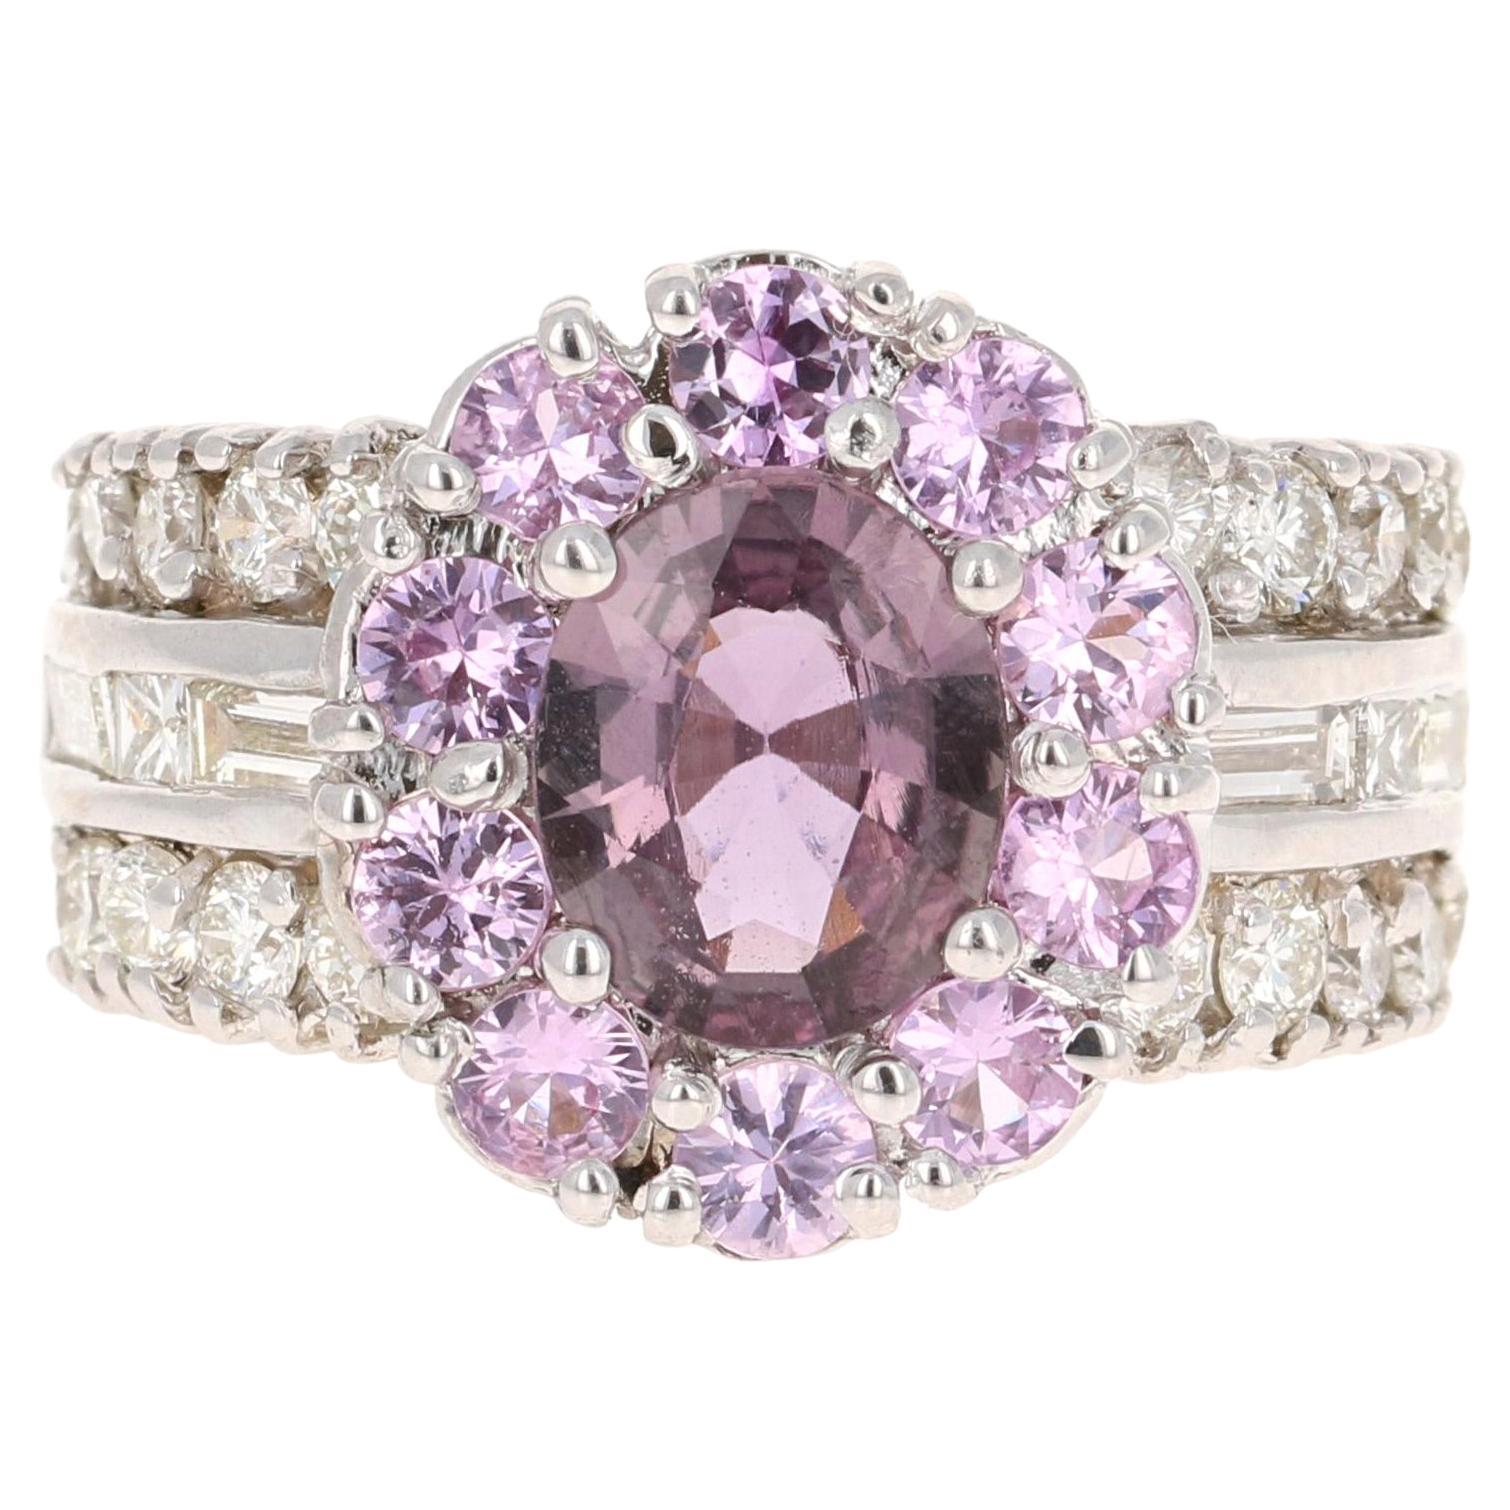 GIA Certified 3.99 Carat Pink Purple Sapphire Diamond 18 Karat White Gold Ring